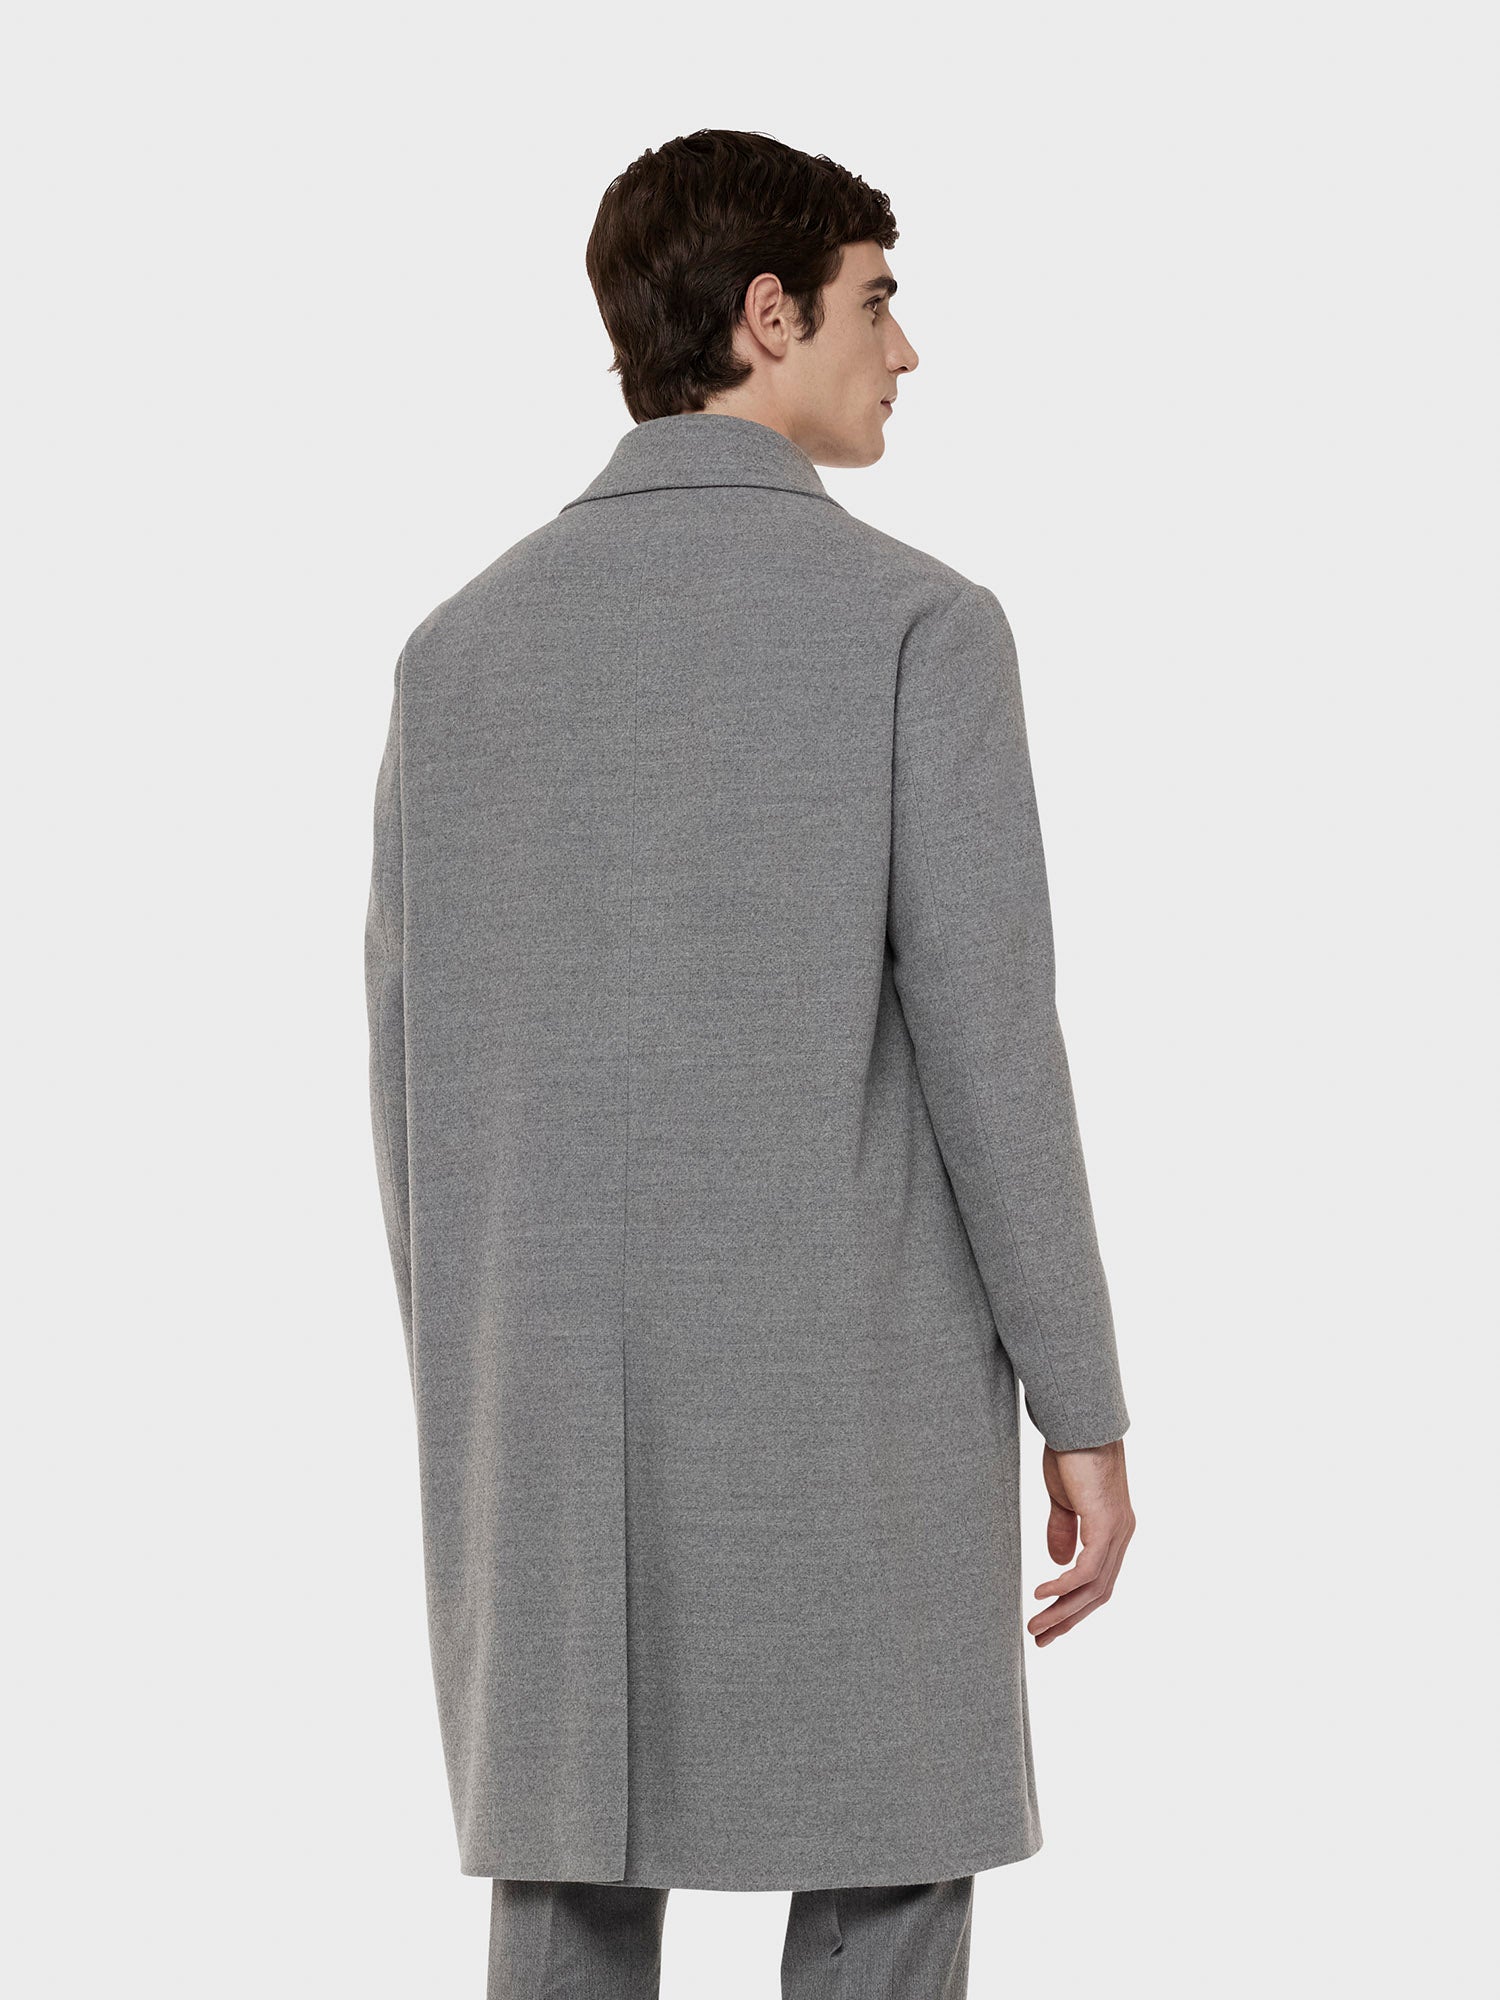 Caruso Menswear Abbigliamento Uomo Cappotto traviata in lana "Nuage" 180's grigio chiaro indossato back